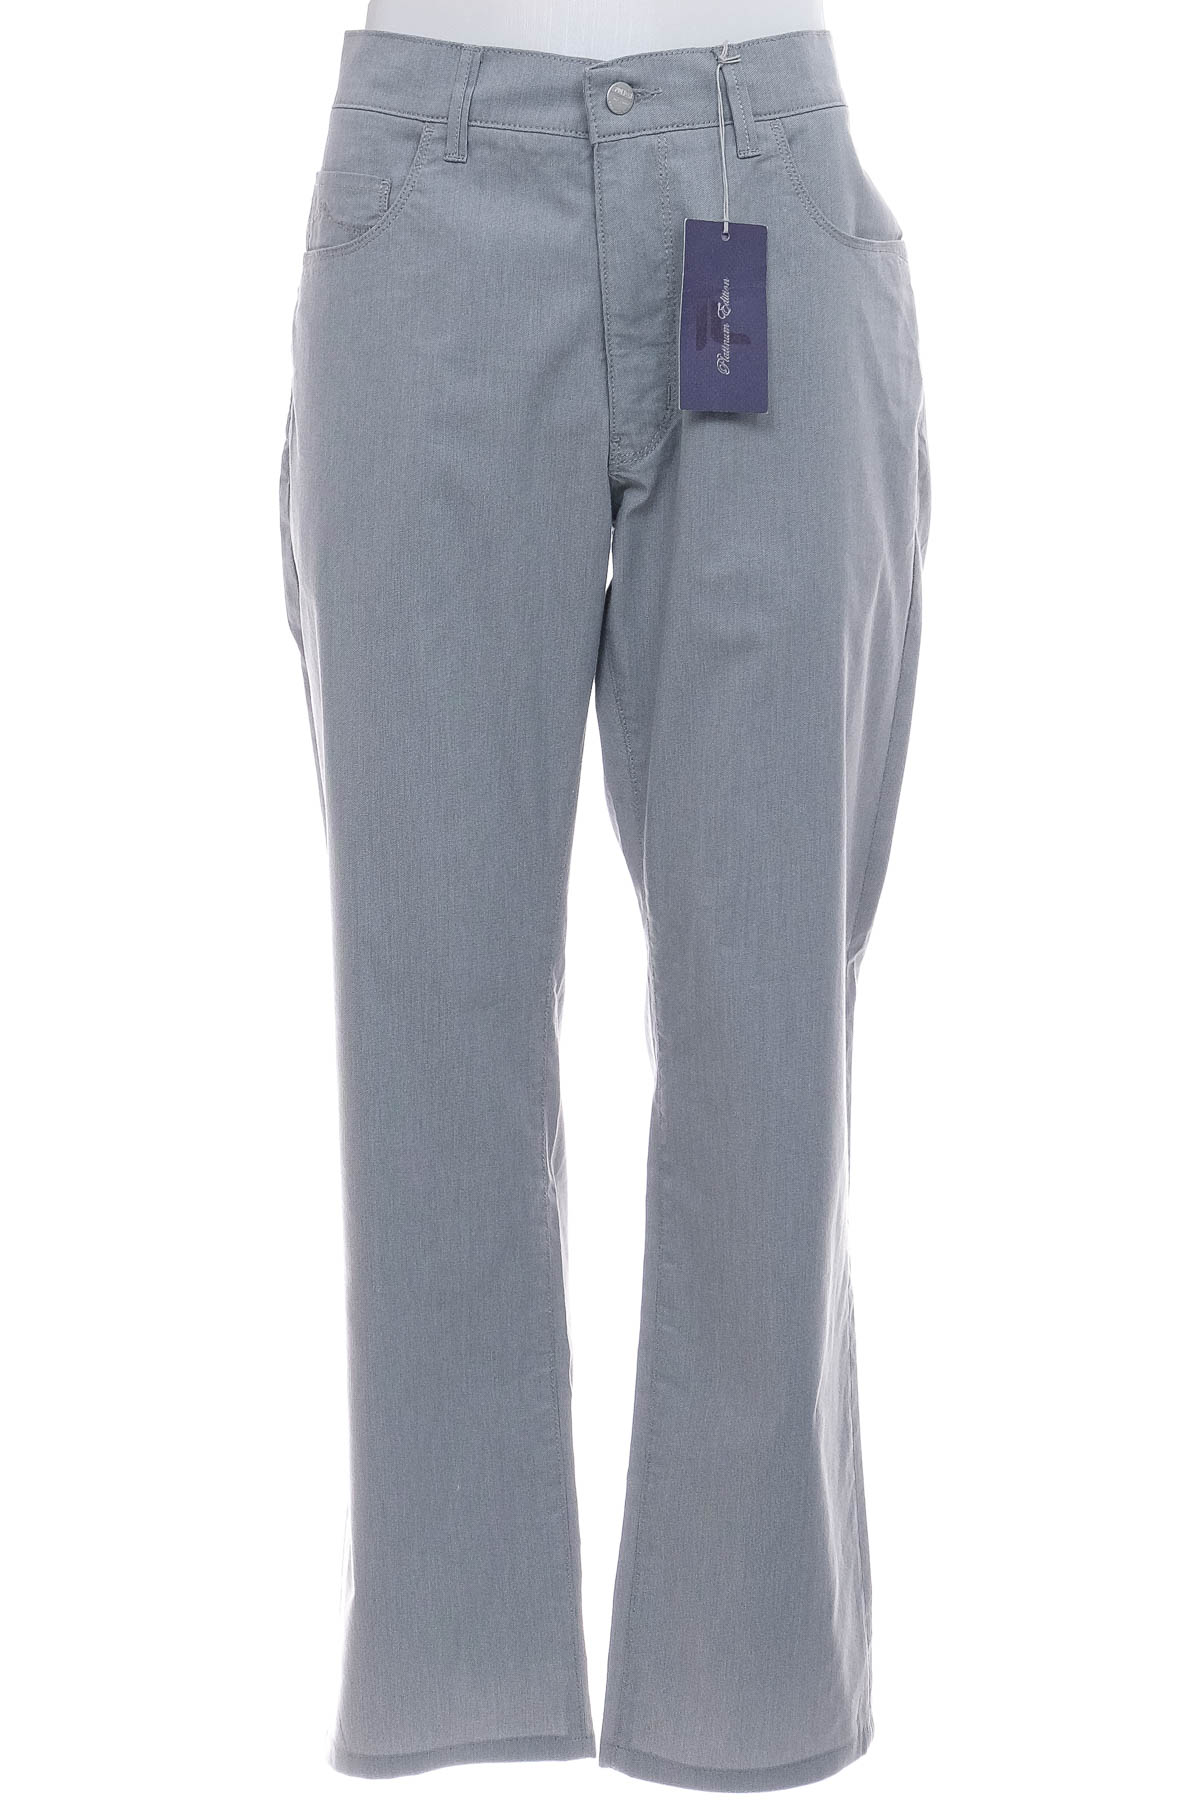 Men's trousers - Pioneer - 0